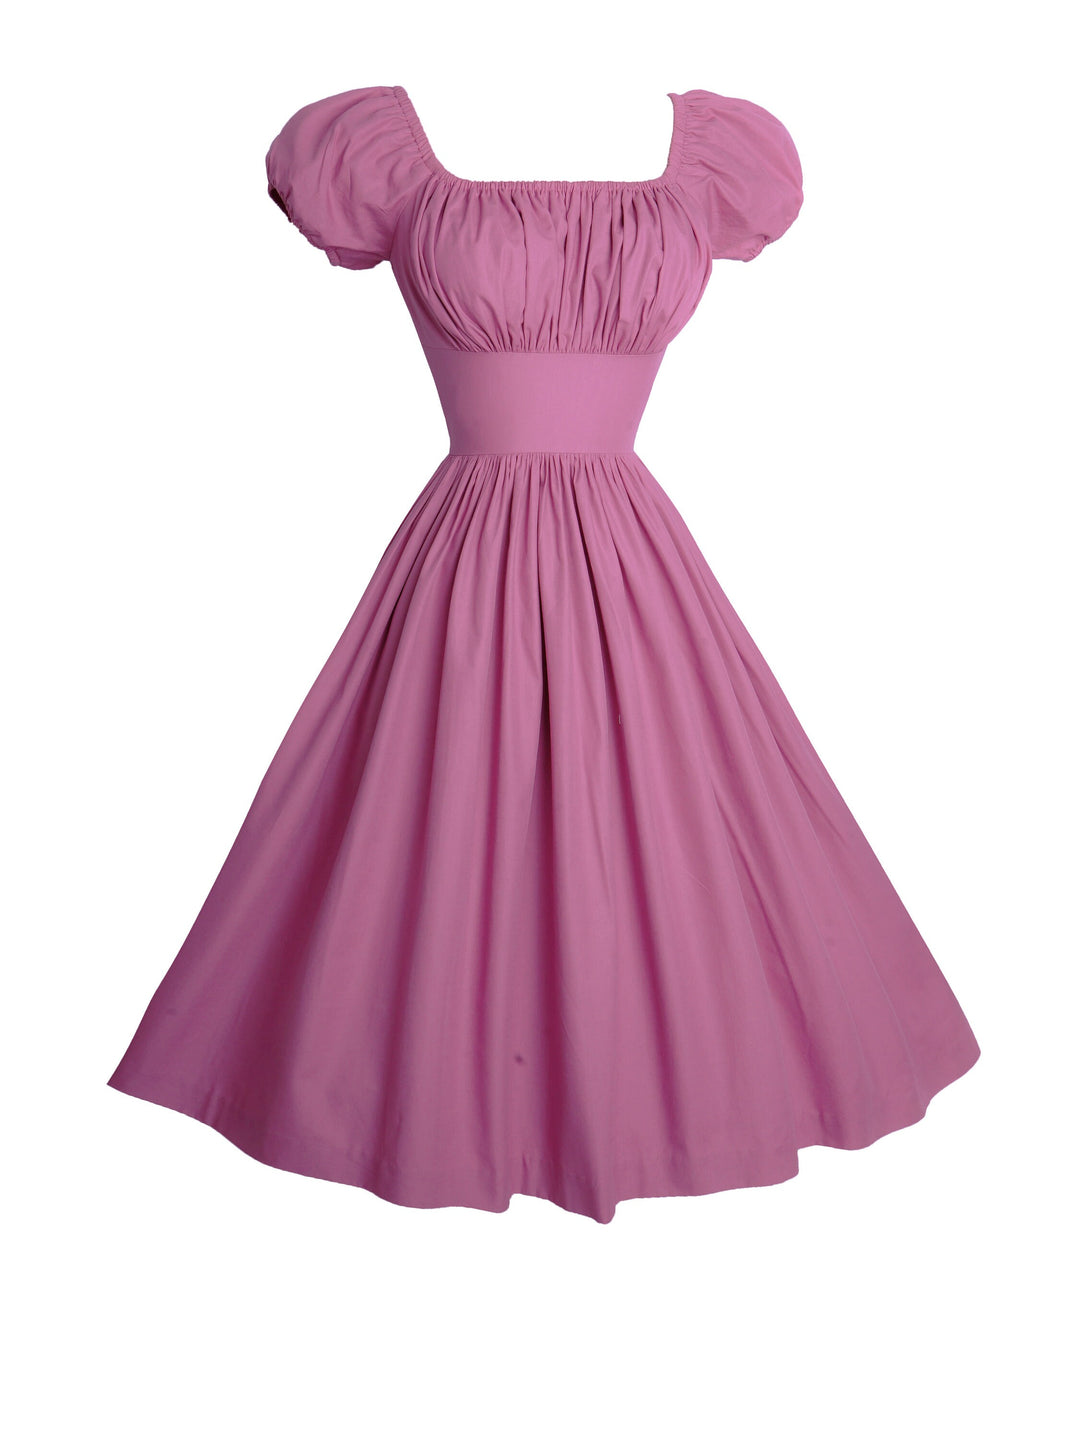 MTO - Loretta Dress in Mauve Rose Cotton